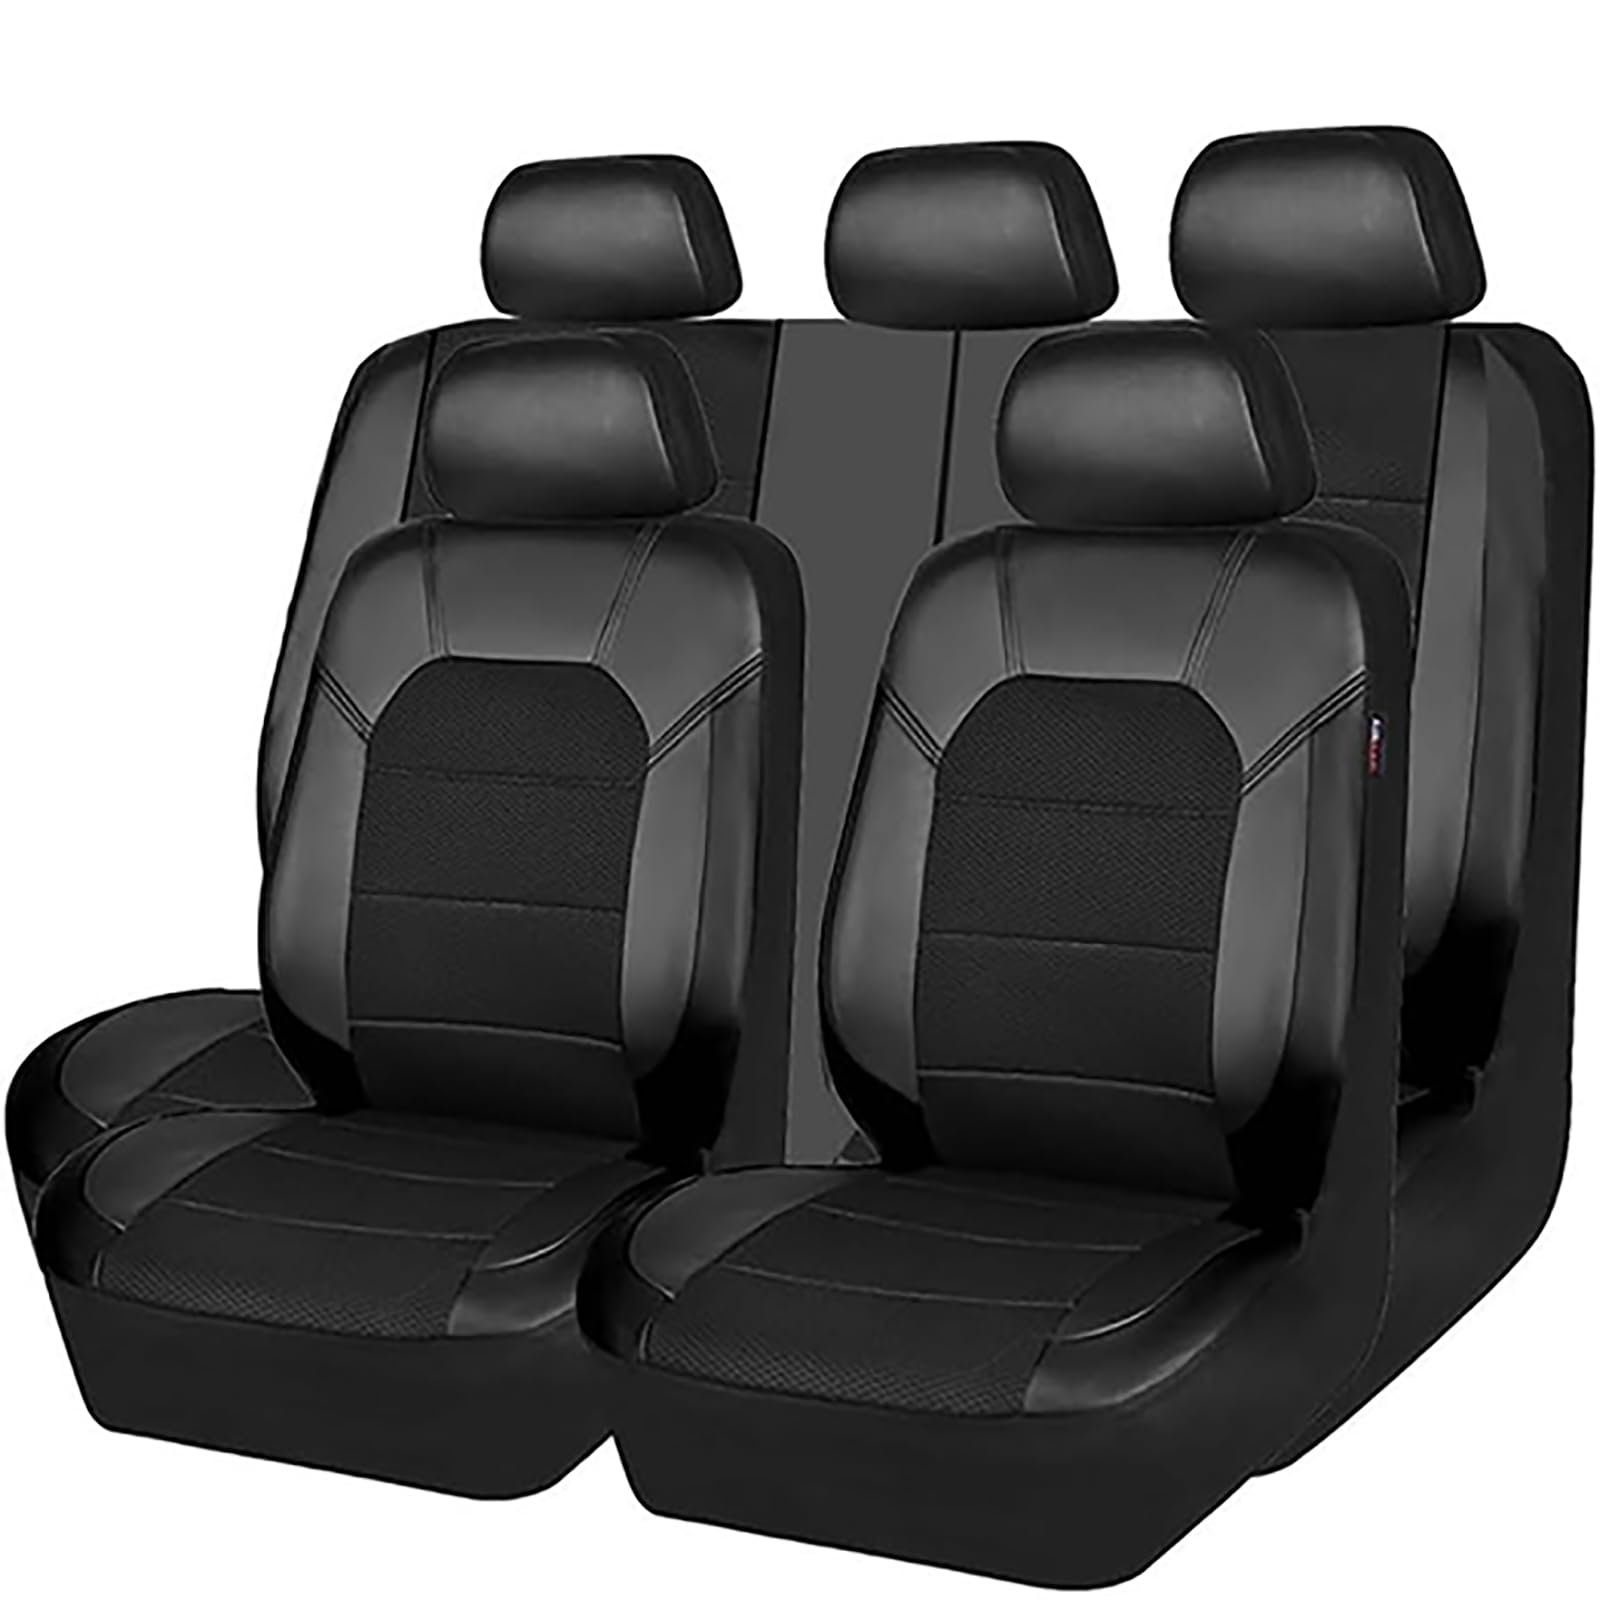 EYHQKRTR Auto Leder Sitzkissen Für Mercedes GLA SUV 2020-2023, 5 Sitzer Full Set SitzbezüGe Schonbezug Vorne Rückbank Sitzschutz Compatible Airbag Innenraum Zubehör,A/Black von EYHQKRTR